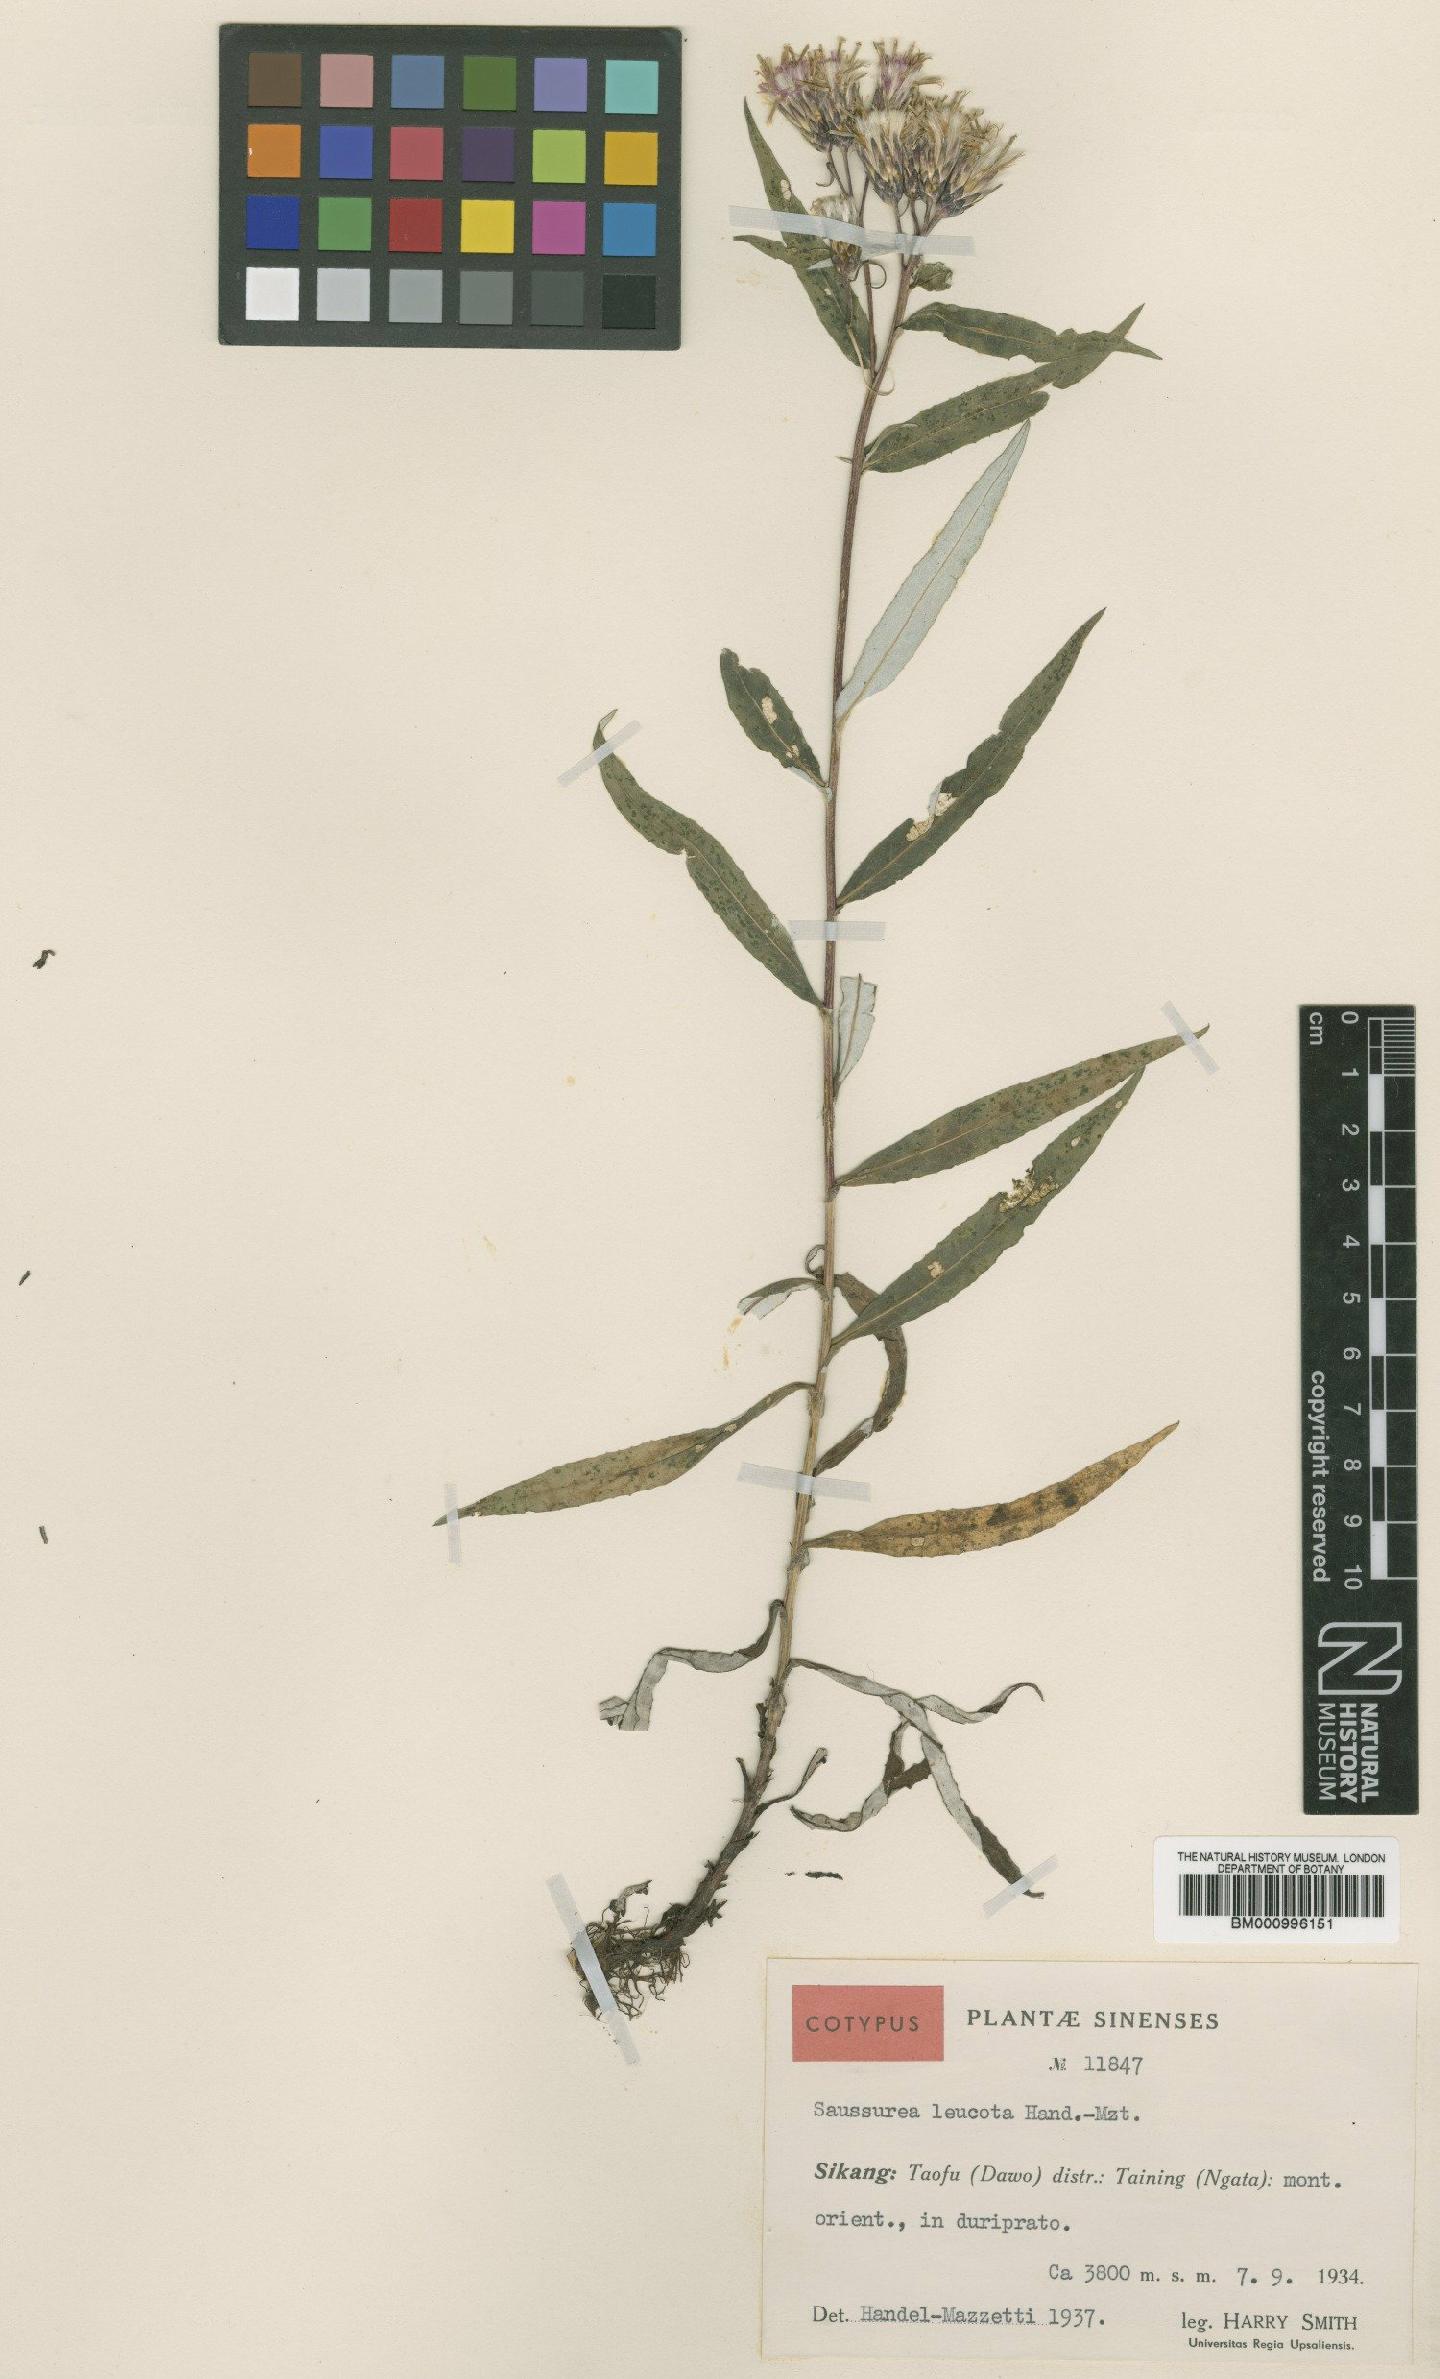 To NHMUK collection (Saussurea leucota Hand.-Mazz.; Type; NHMUK:ecatalogue:479528)